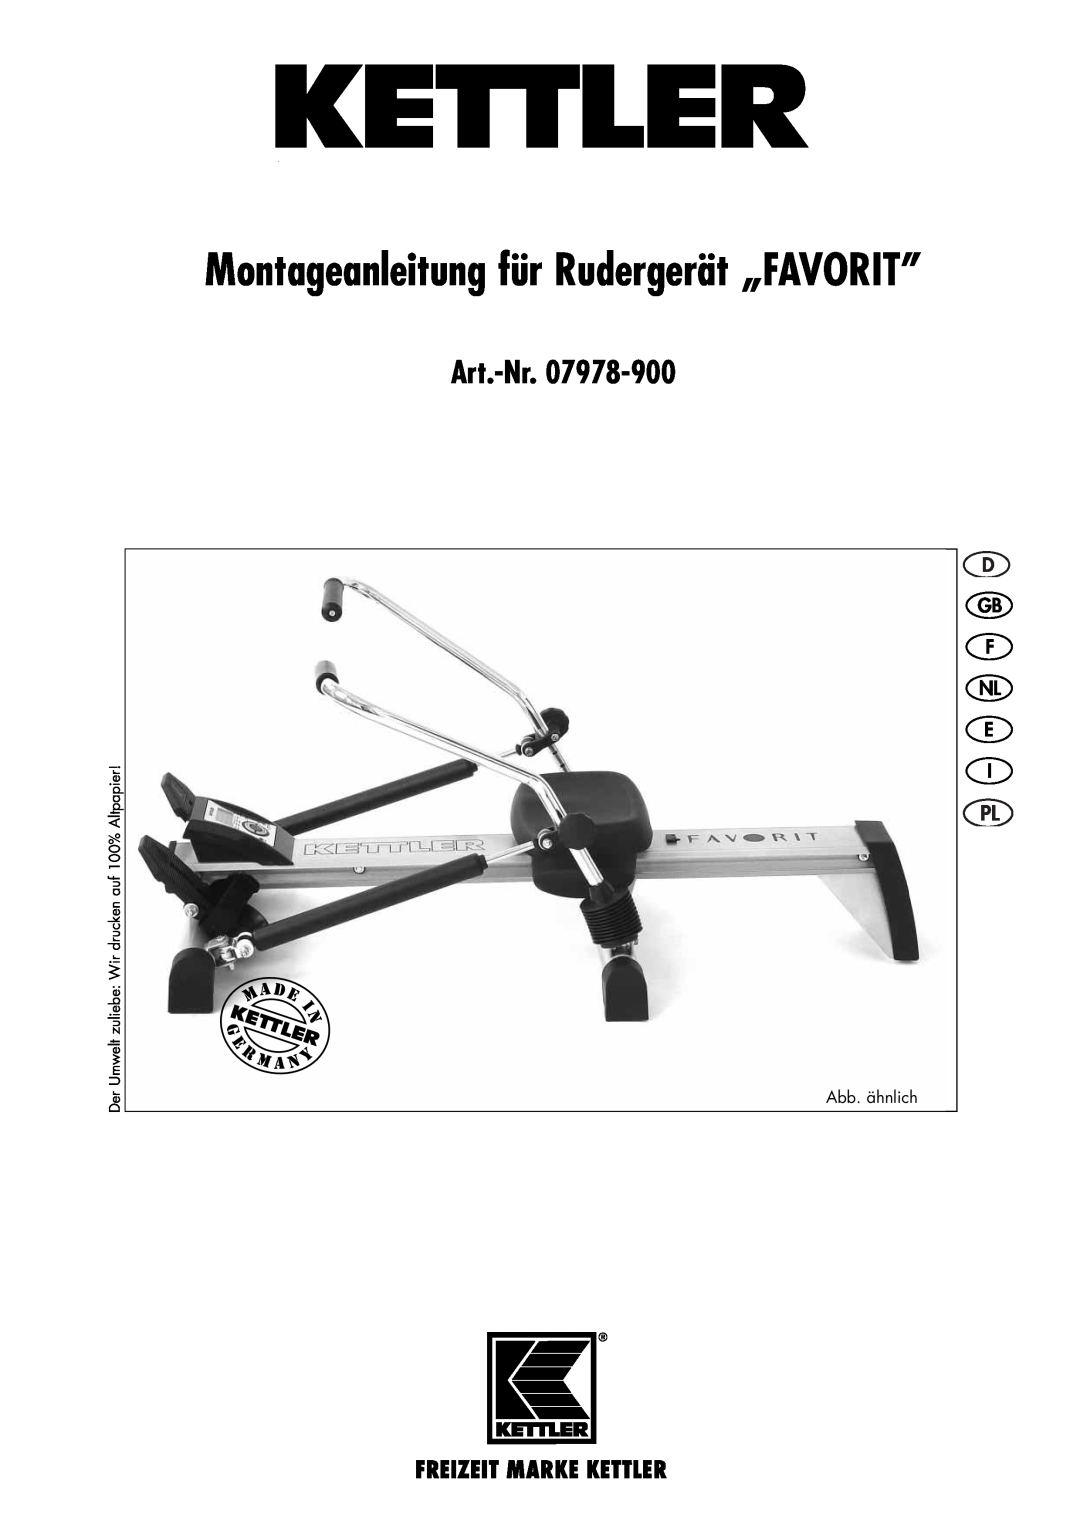 Kettler 07978-900 manual Montageanleitung für Rudergerät „FAVORIT”, Art.-Nr, Gb F Nl E 